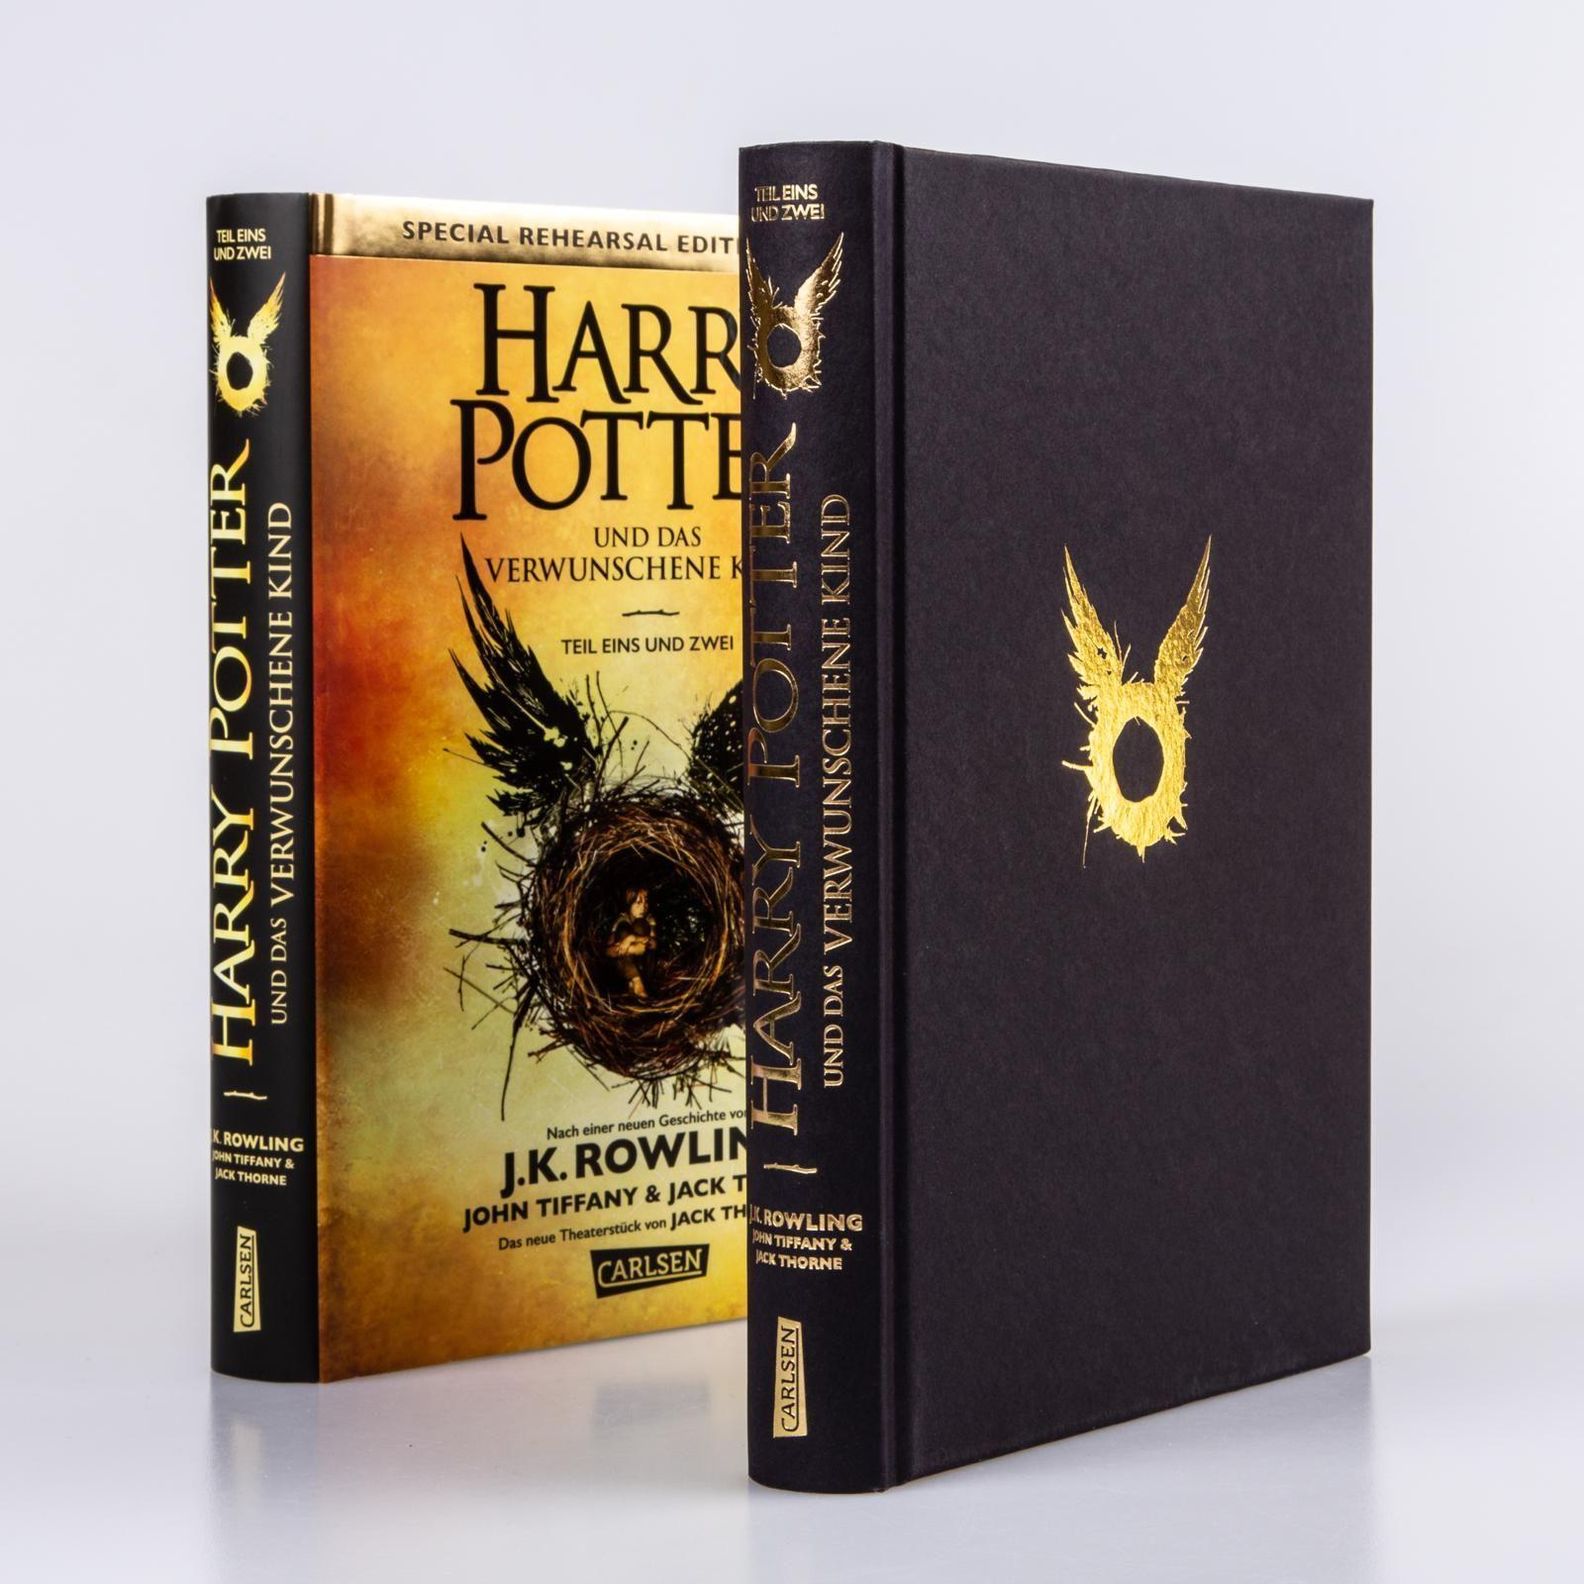 Harry Potter Und Das Verwunschene Kind Buch Versandkostenfrei Weltbild Ch